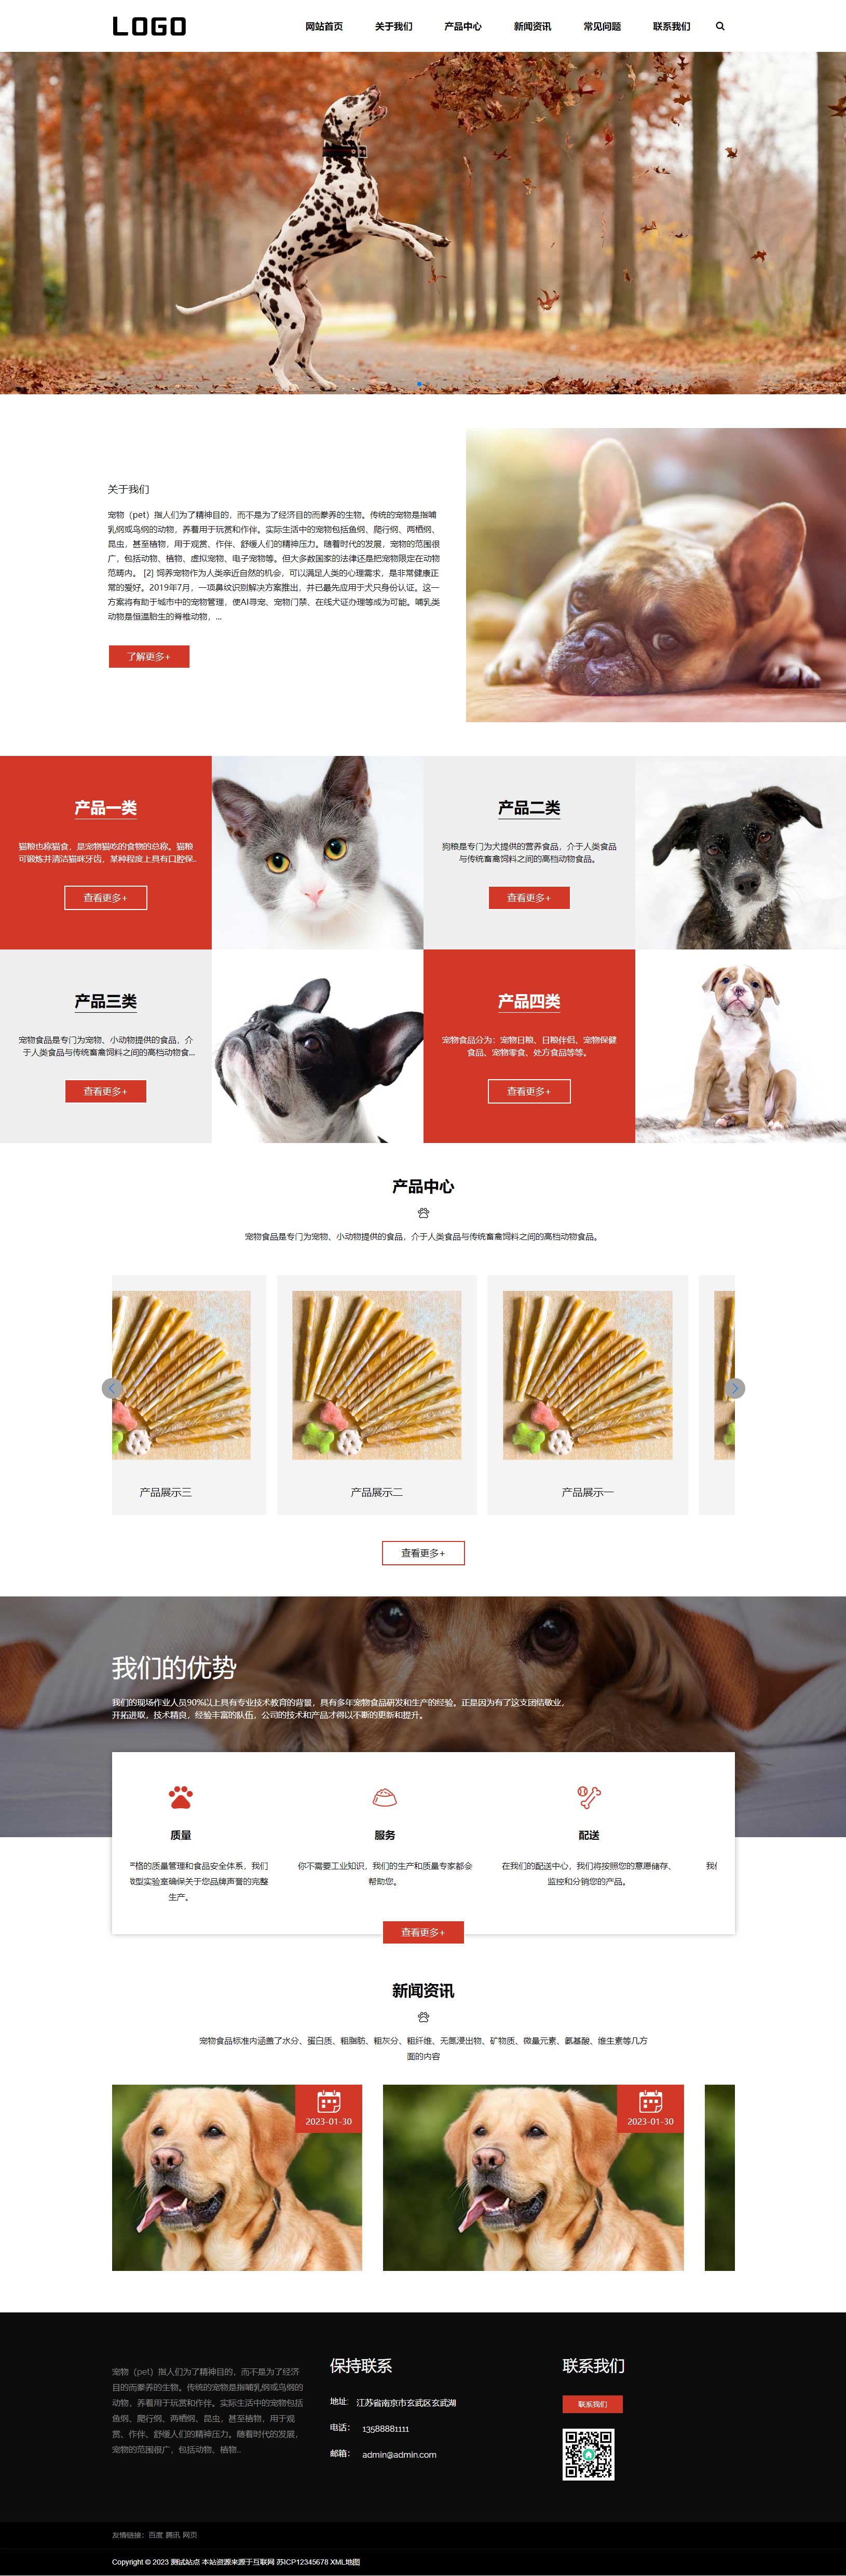 猫粮狗粮宠物粮食网站模板 宠物零食网站源码下载